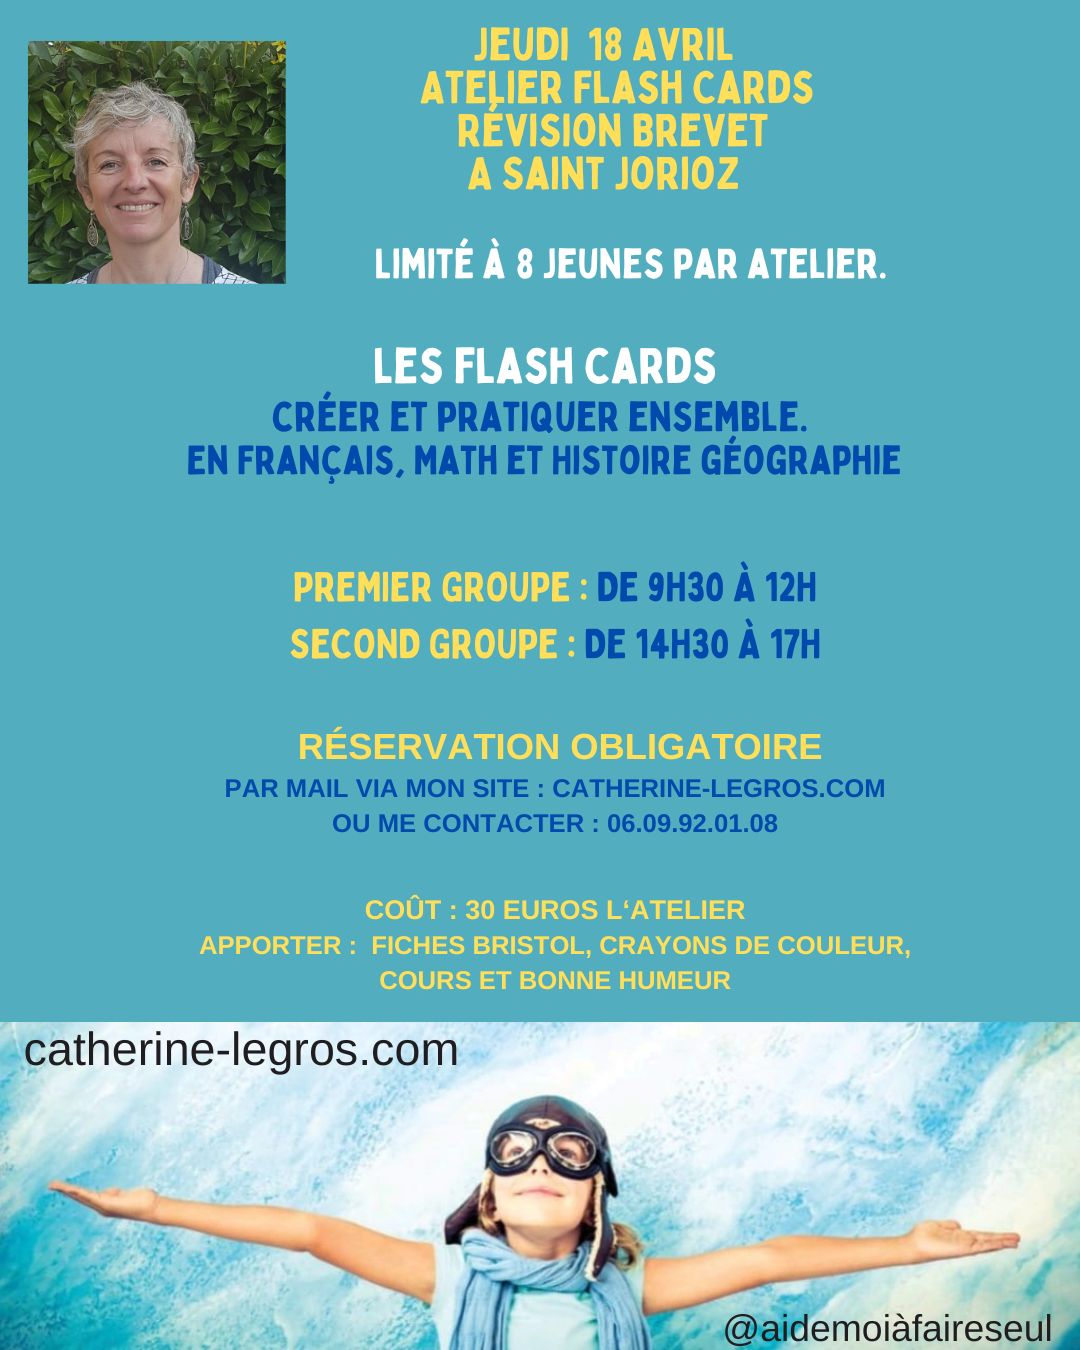 Atelier Flash cards - Révision brevet | Saint Jorioz (74)